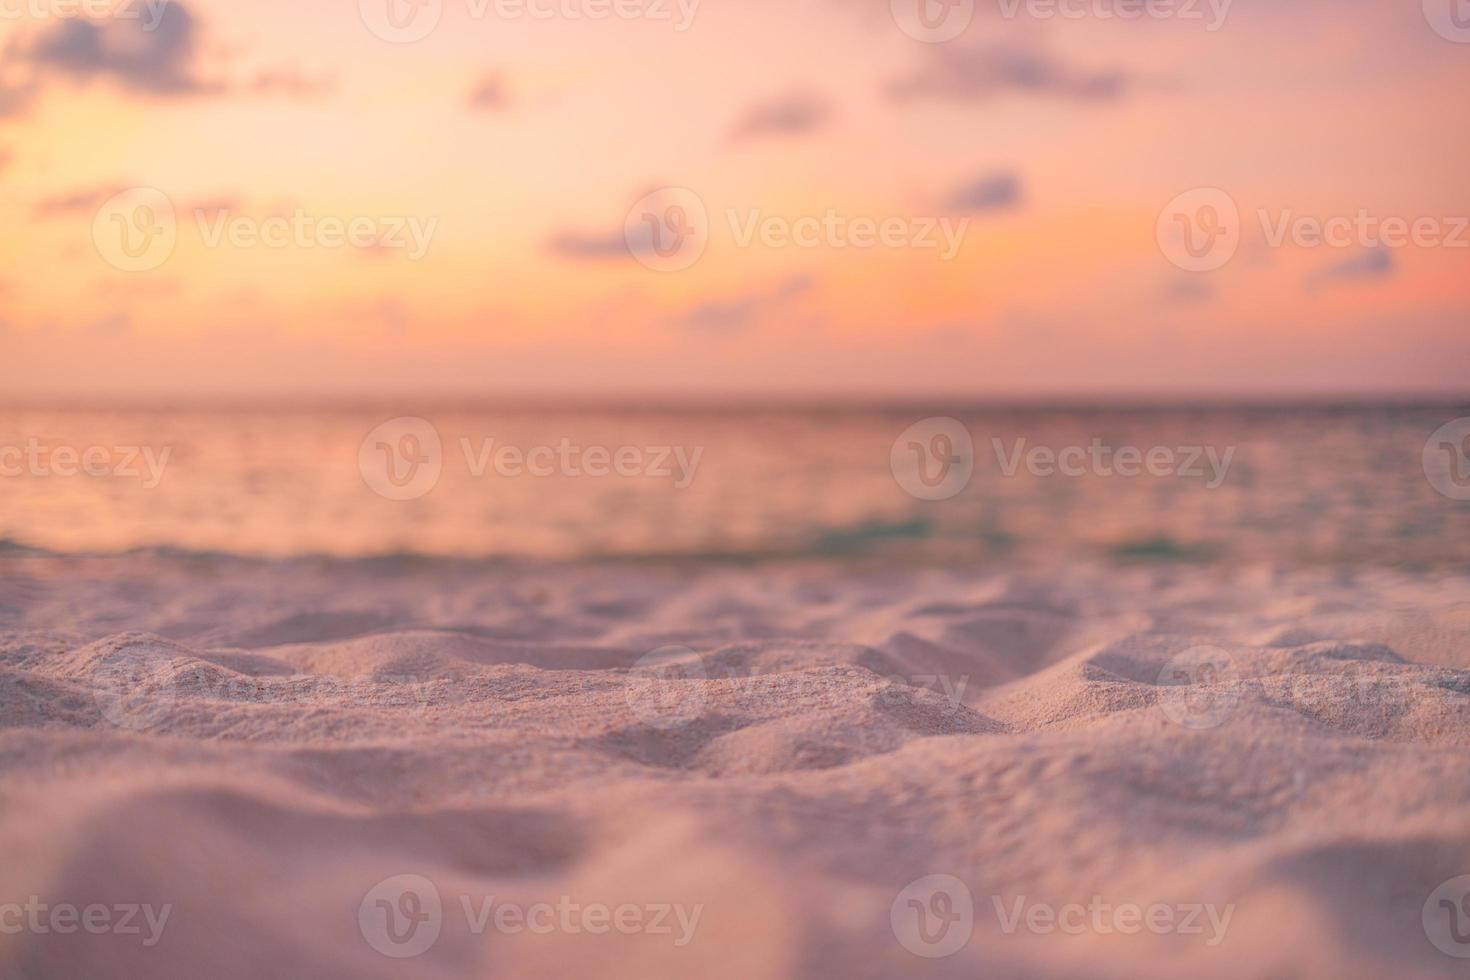 entspannender seesandhimmel und sommertag. Sonnenuntergang Strand Hintergrund. urlaubskonzept nahaufnahme sanddünen, verschwommener sonnenuntergang, meerblick und horizont. mittelmeer sonnenaufgang strandufer, idyllische tourismuslandschaft foto